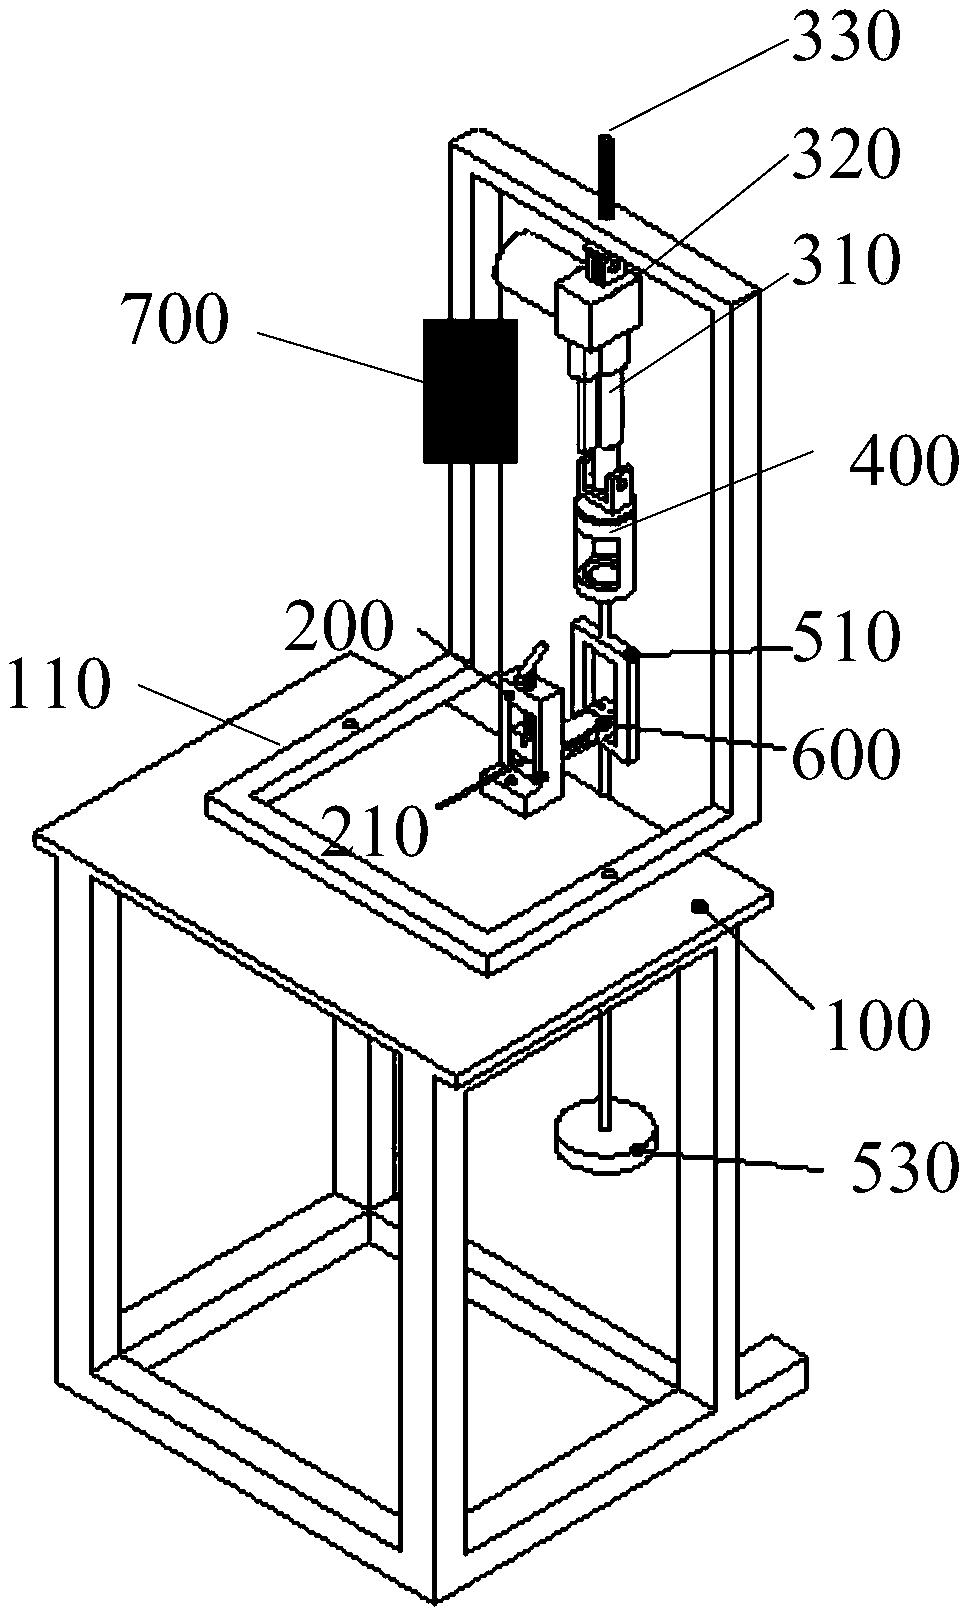 Testing device of weighing sensor